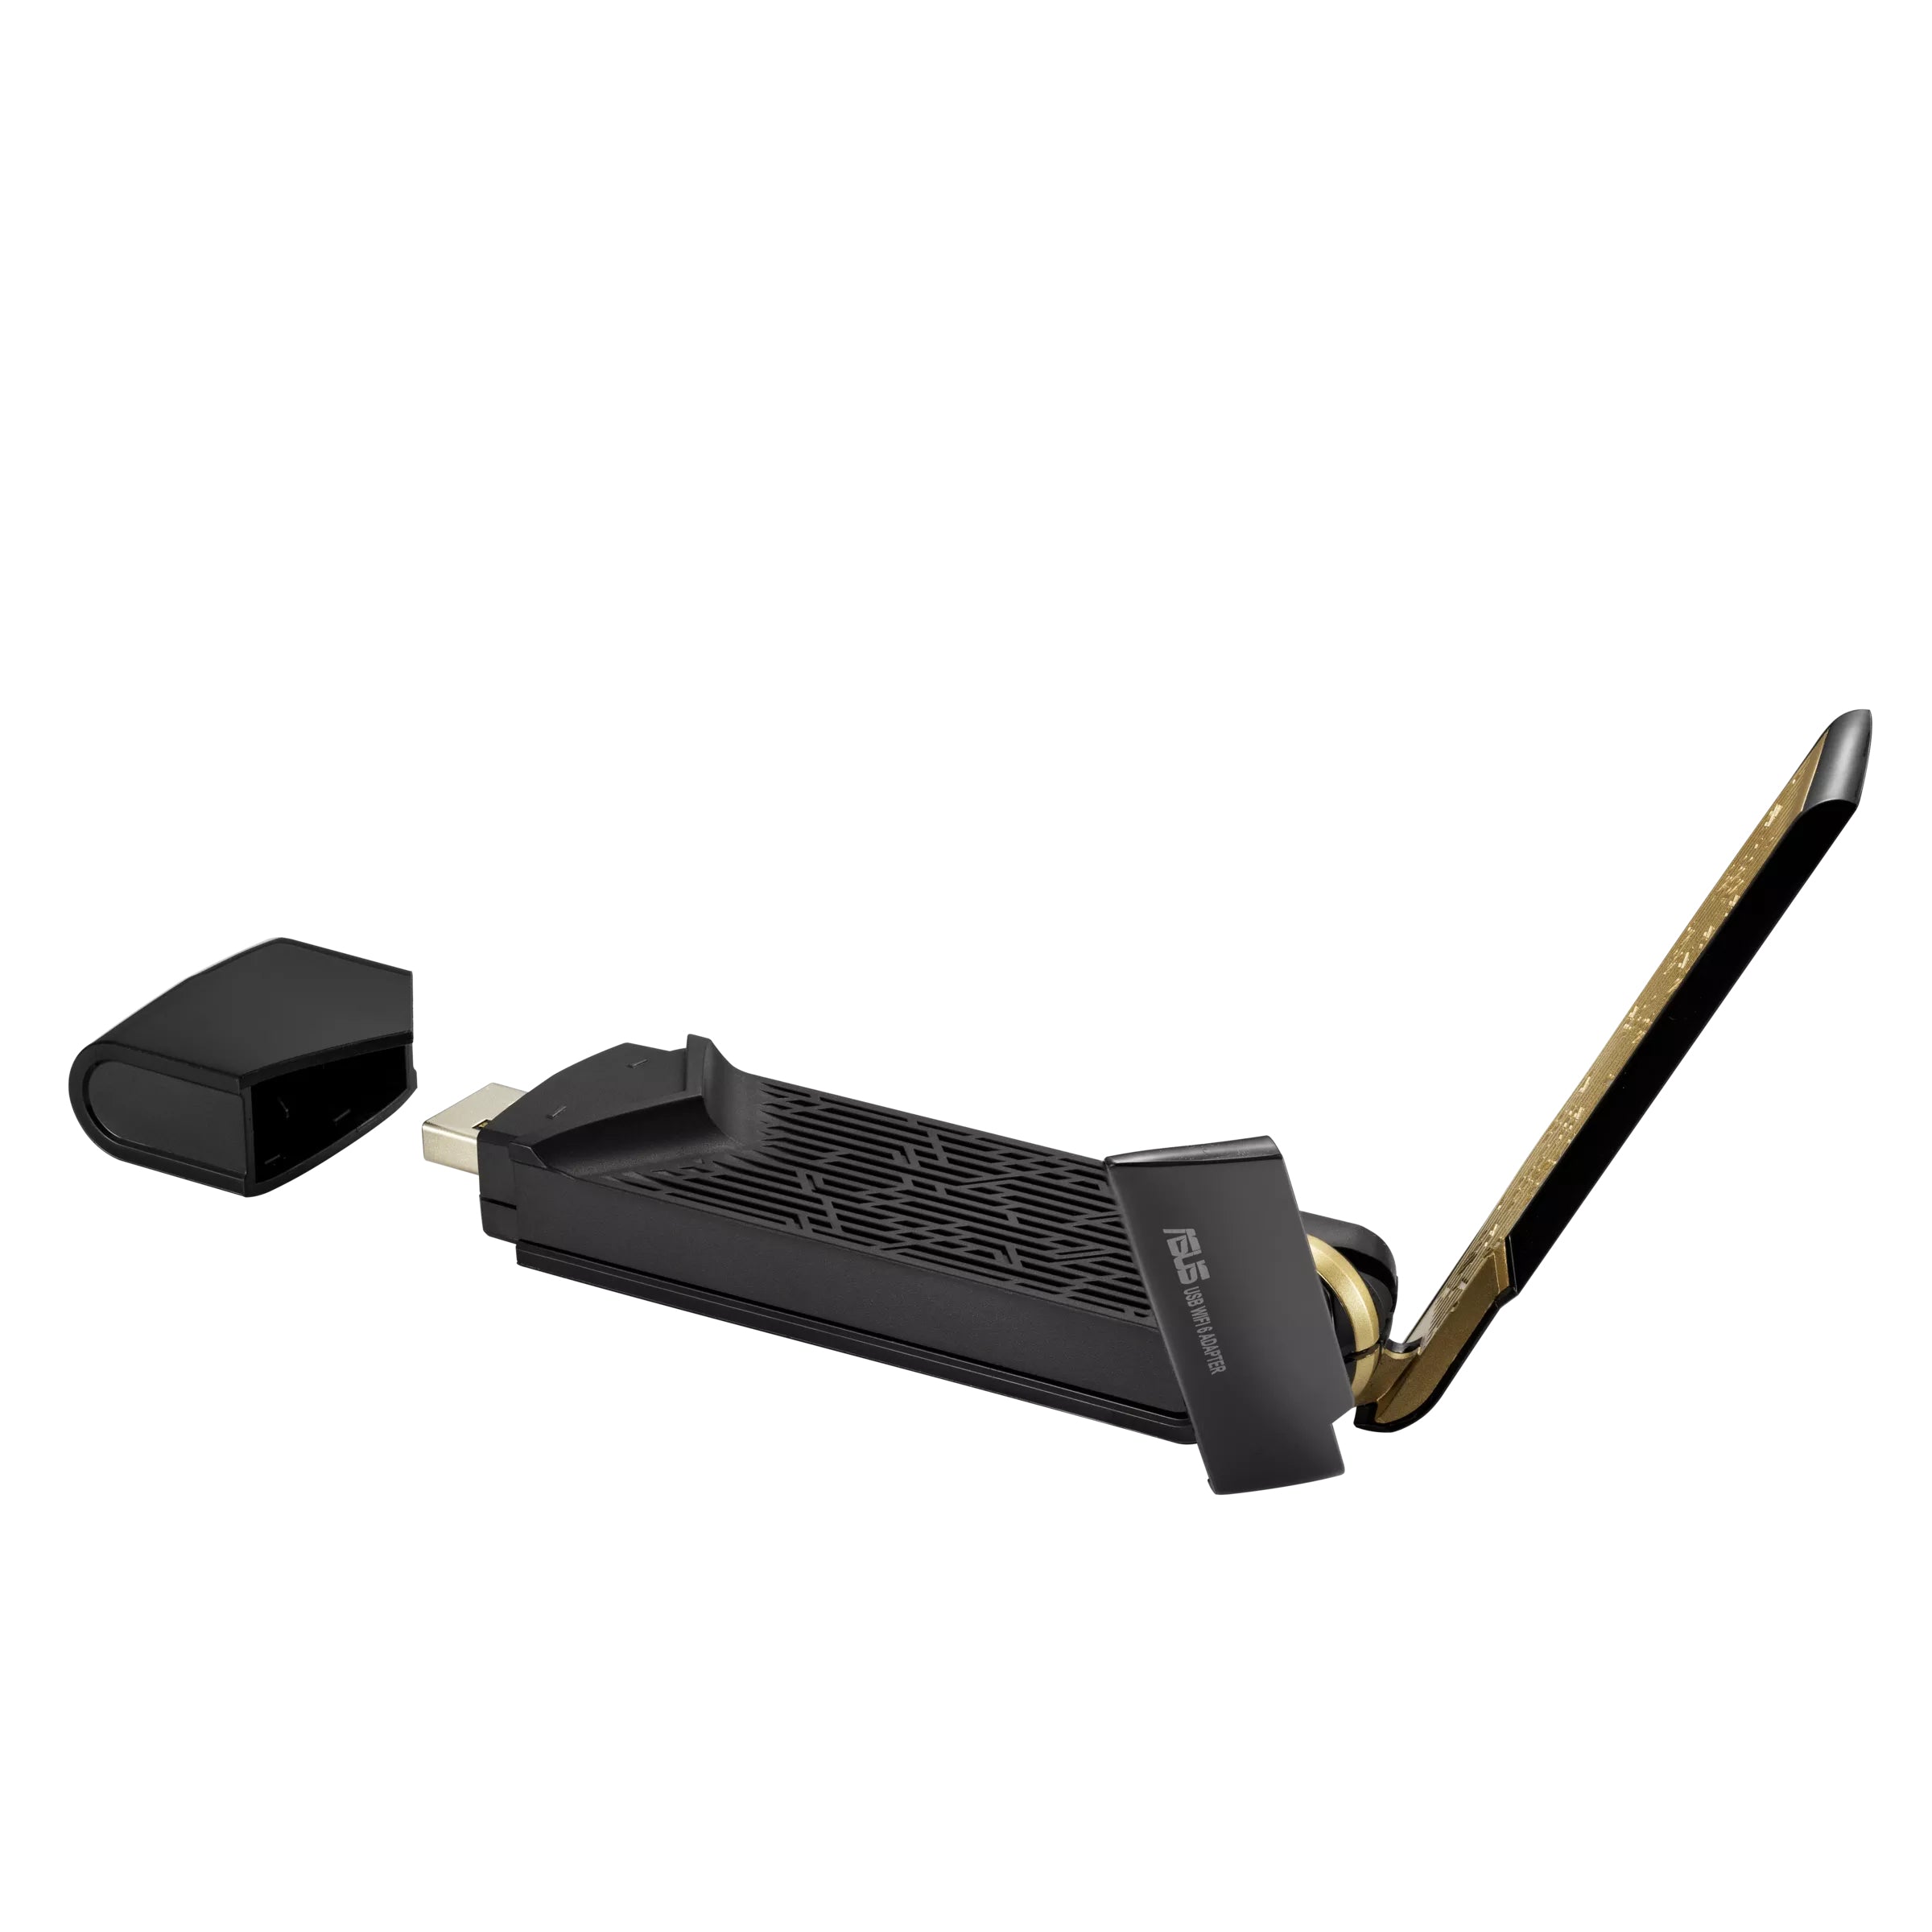 ASUS Netzwerkadapter USB Wireless